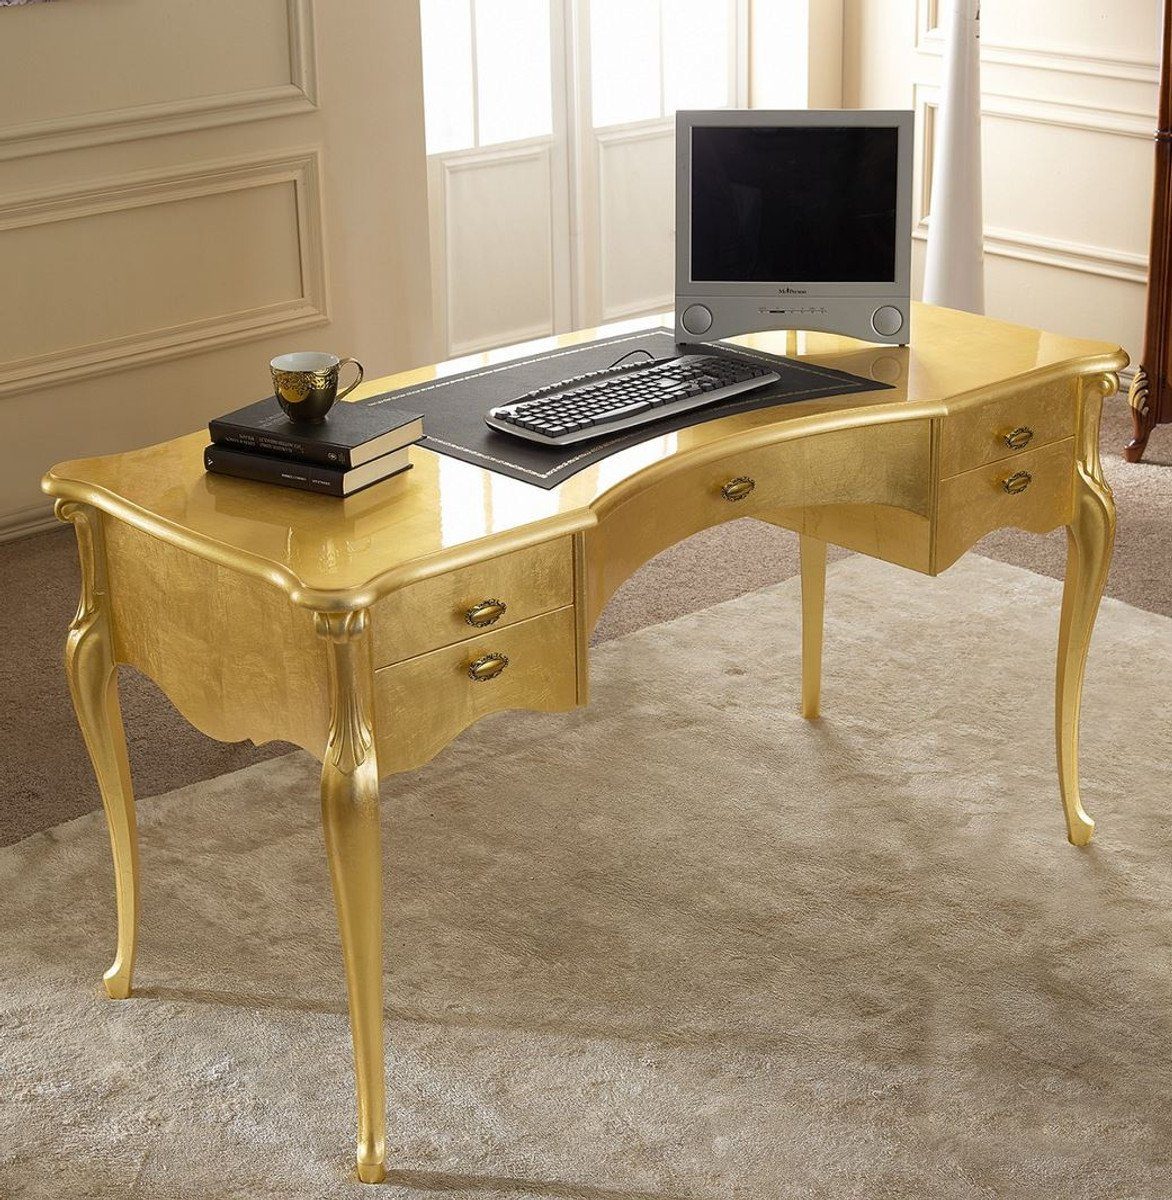 Barock - Luxus Schreibtisch Schreibtisch Edler mit Luxus - 5 Schubladen - in Italy / Barock Casa Qualität Massivholz Padrino Made Bürotisch Büromöbel - Schwarz Gold